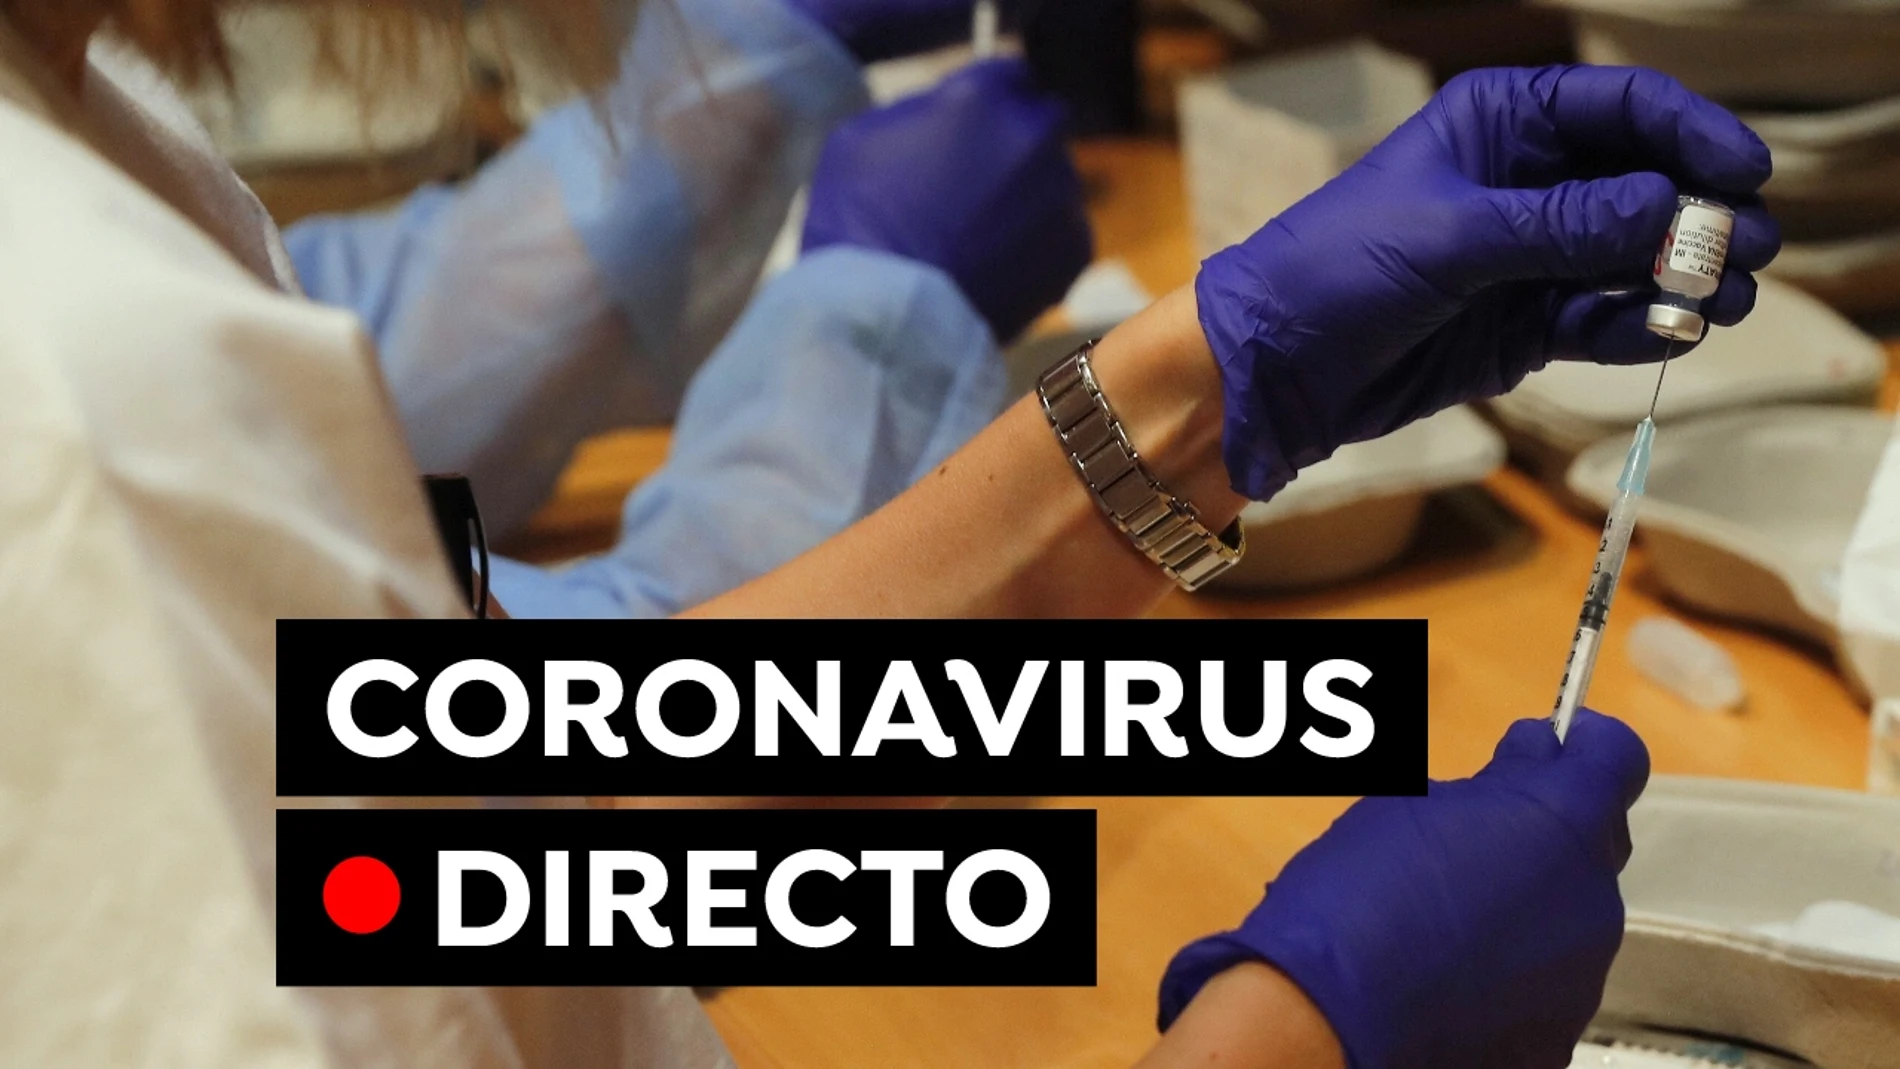 Coronavirus España hoy: Última hora de las restricciones, vacunas y datos de contagios y muertes, en directo